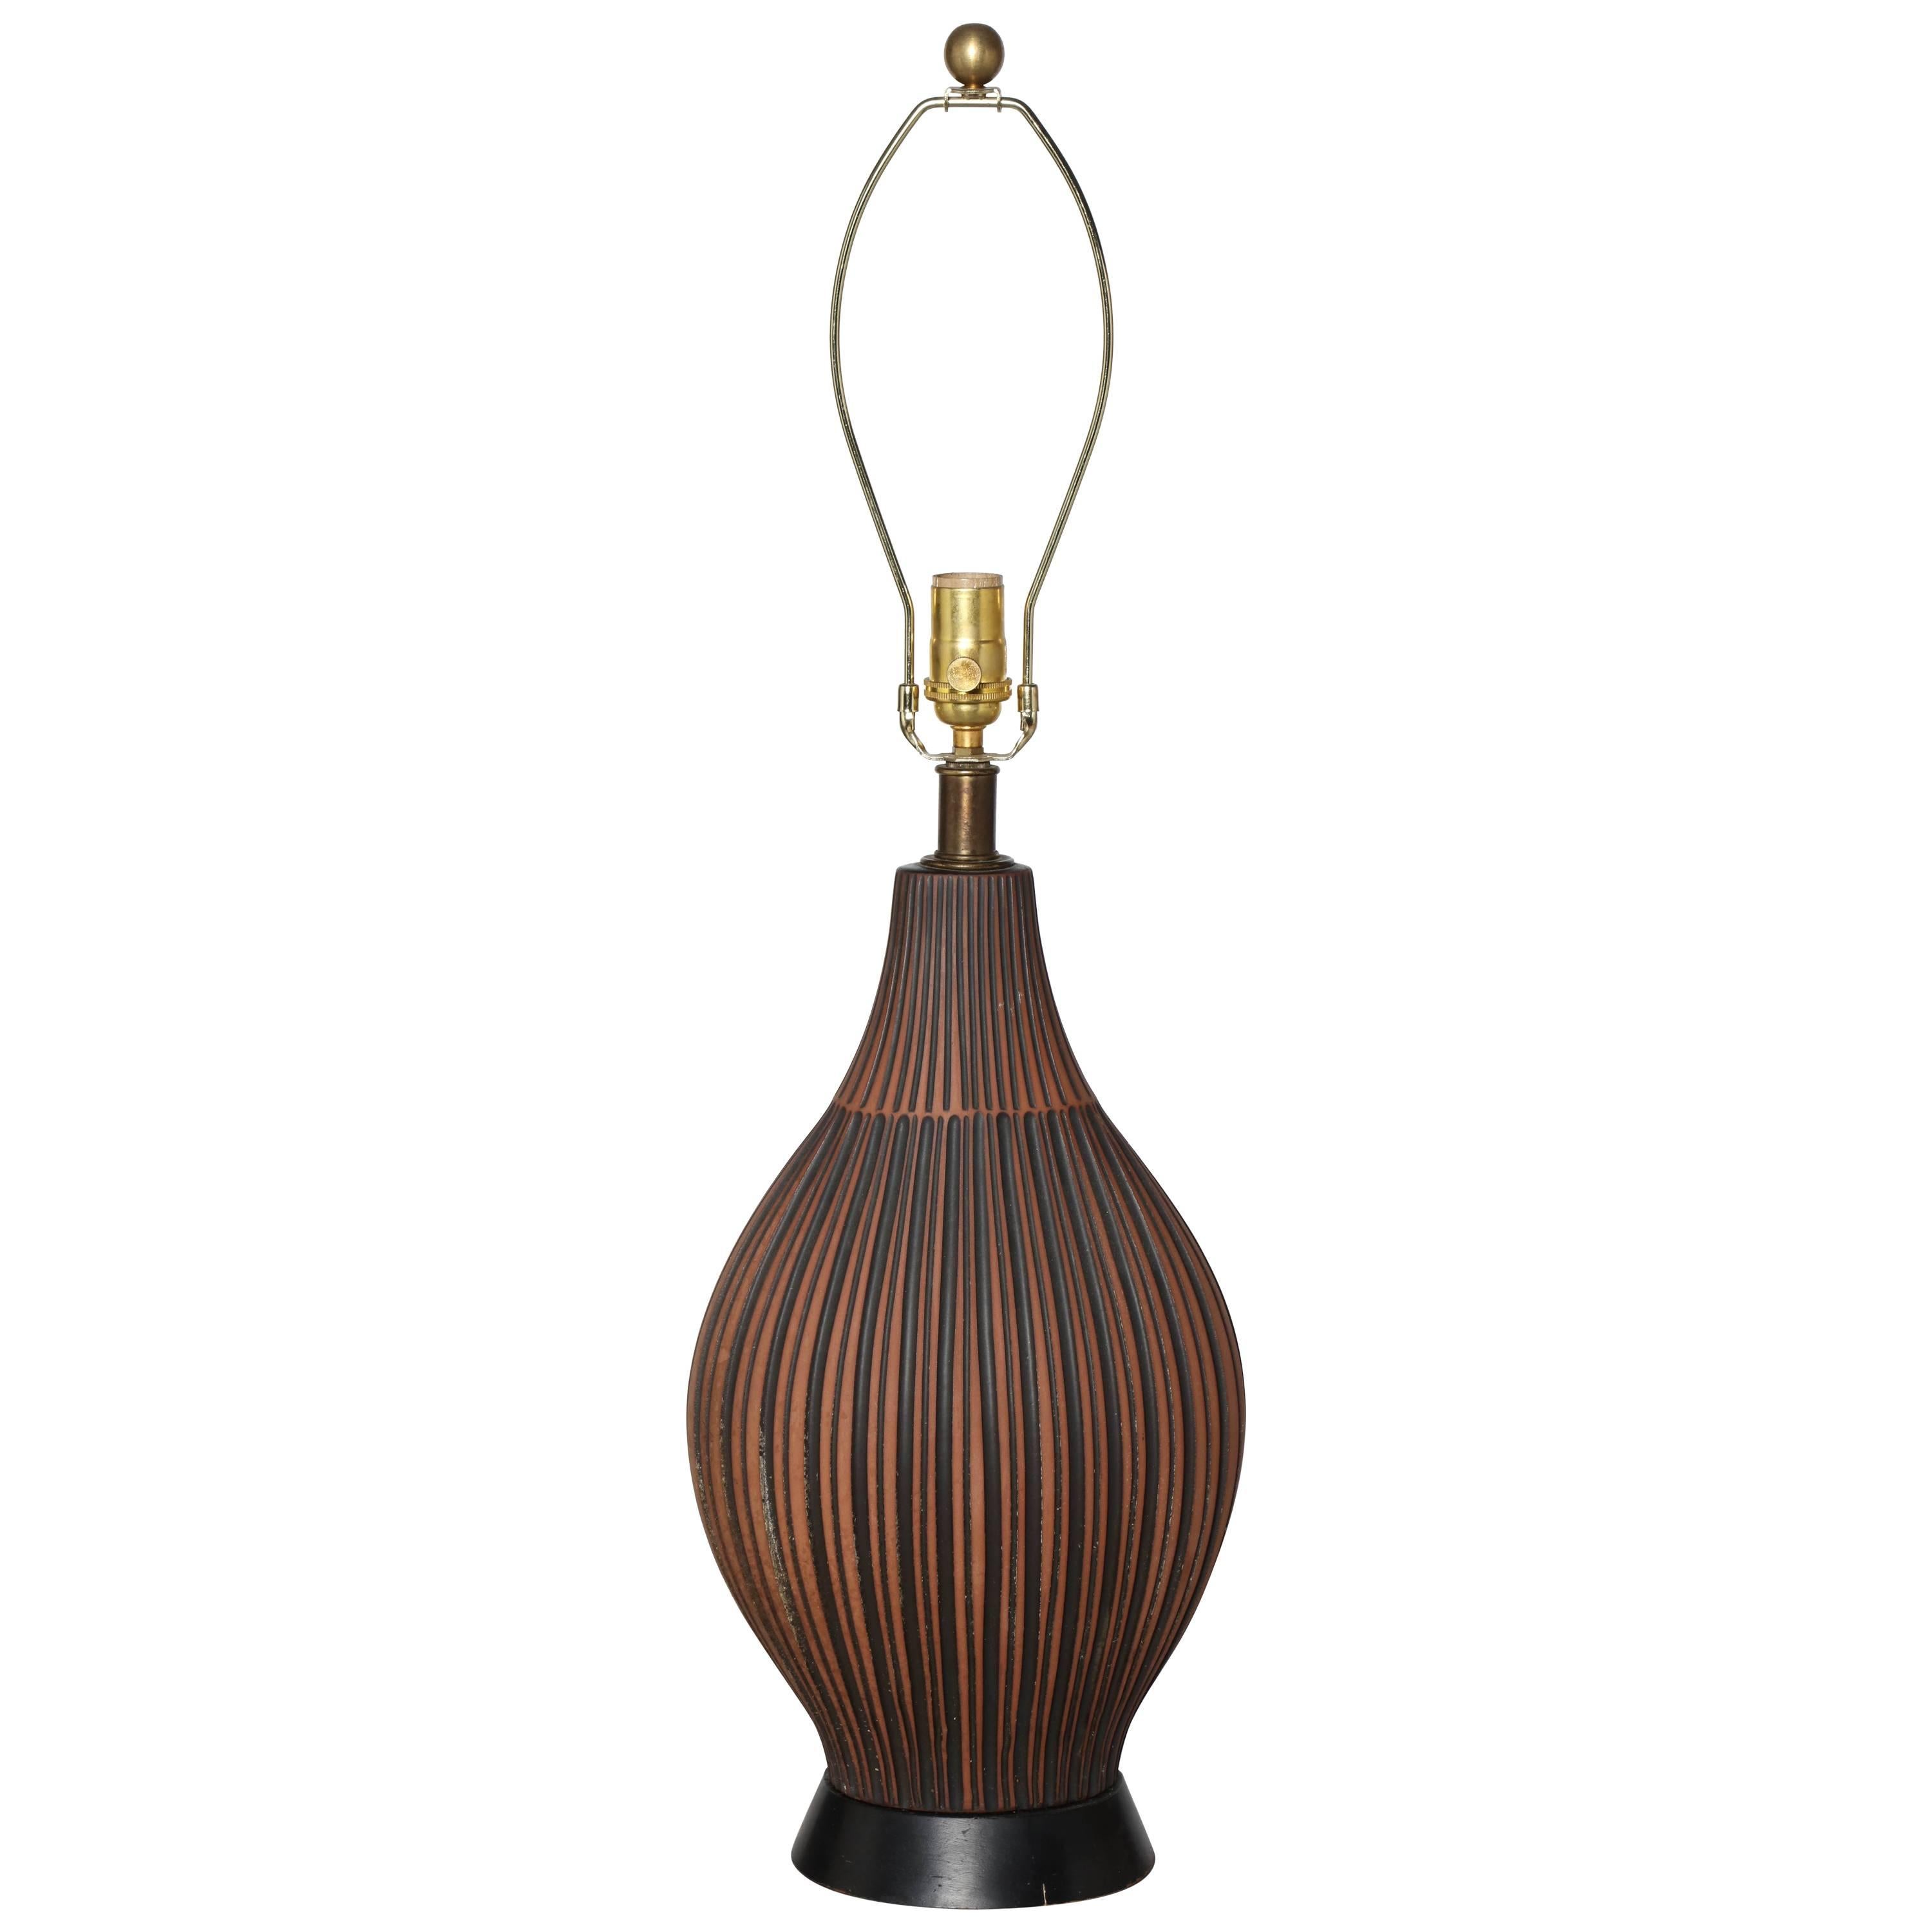 Lee Rosen for Design-Technics Style Terracotta & Black Ceramic Table Lamp